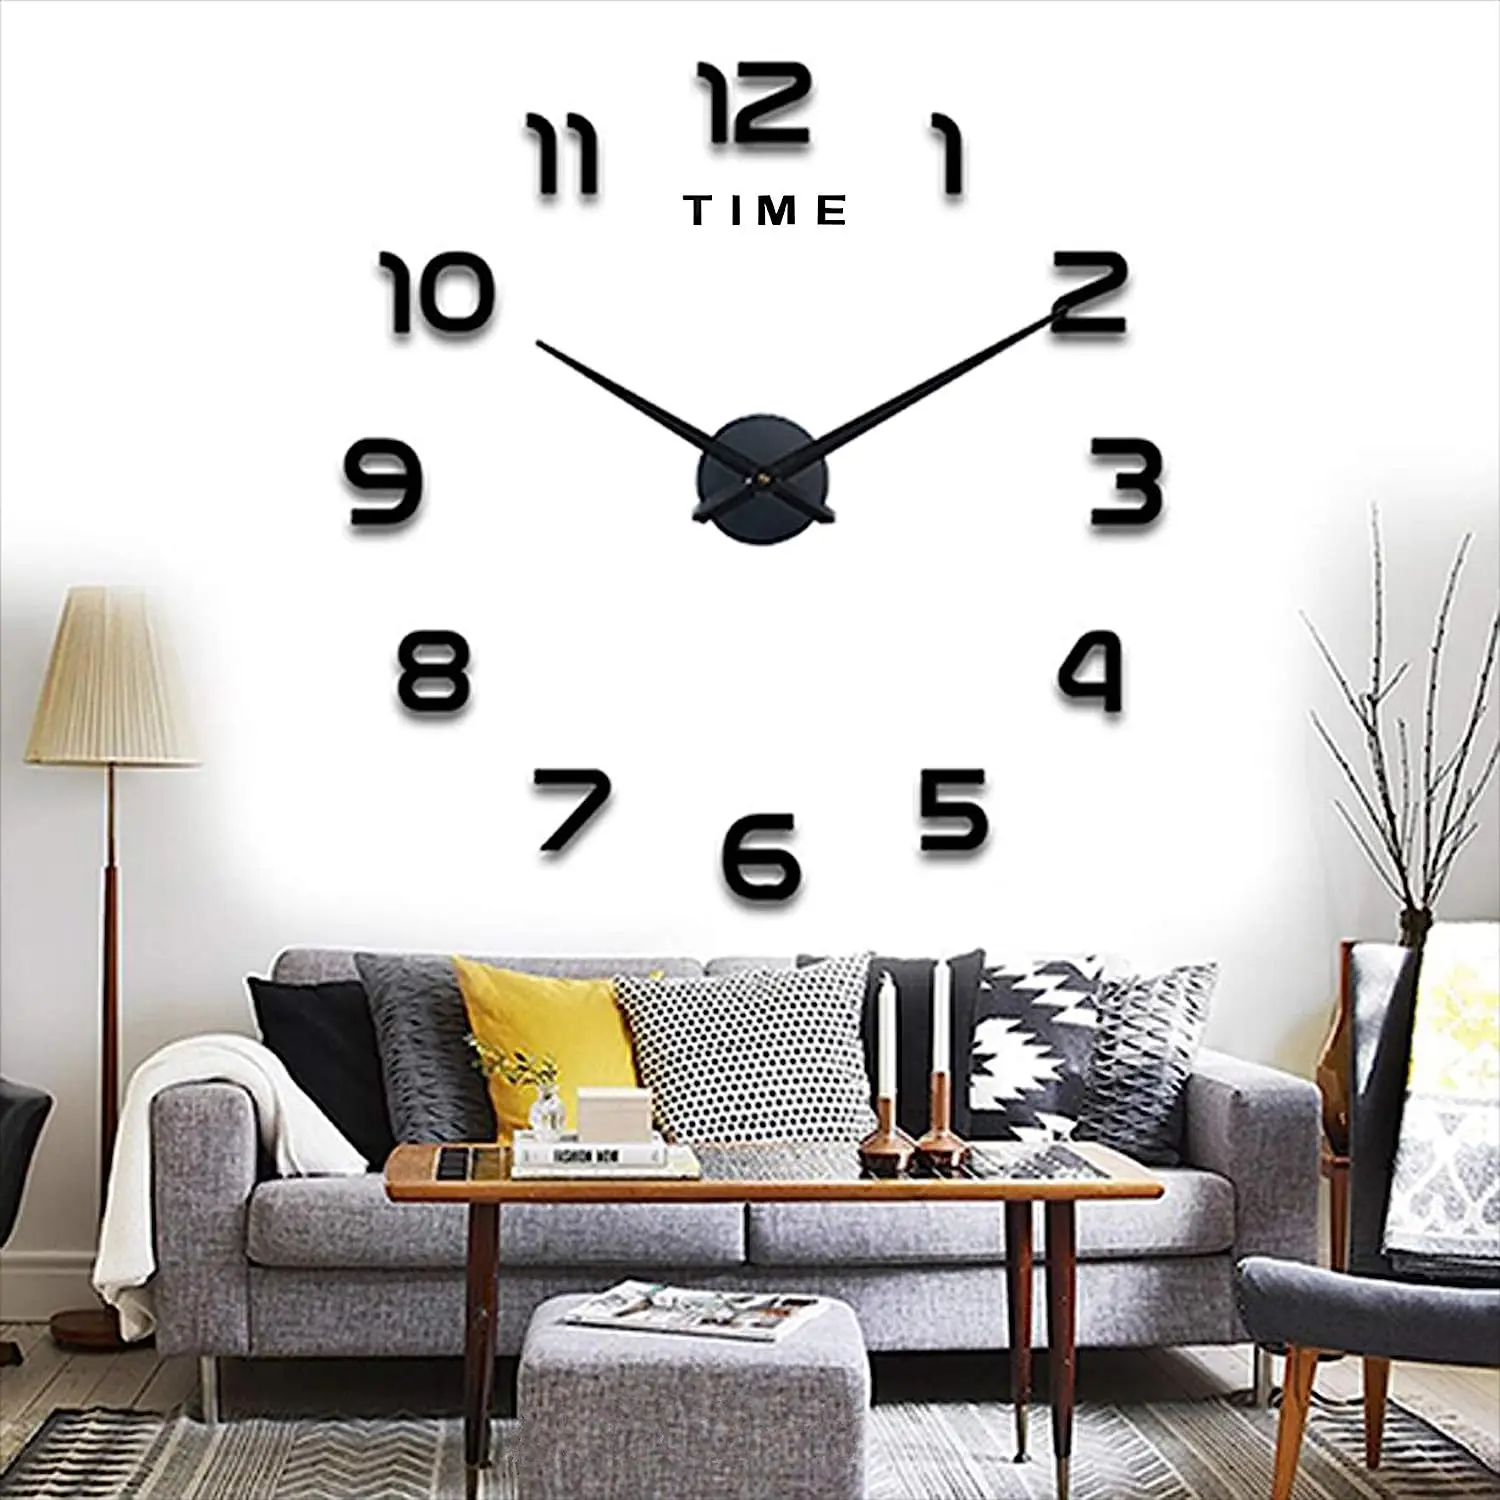 

Reloj de Pared Moderno DIY, Etiqueta de La Pared del Reloj Mudo 3D, tamaño Grande, Fácil de Montar, para el Hogar, Oficina, De